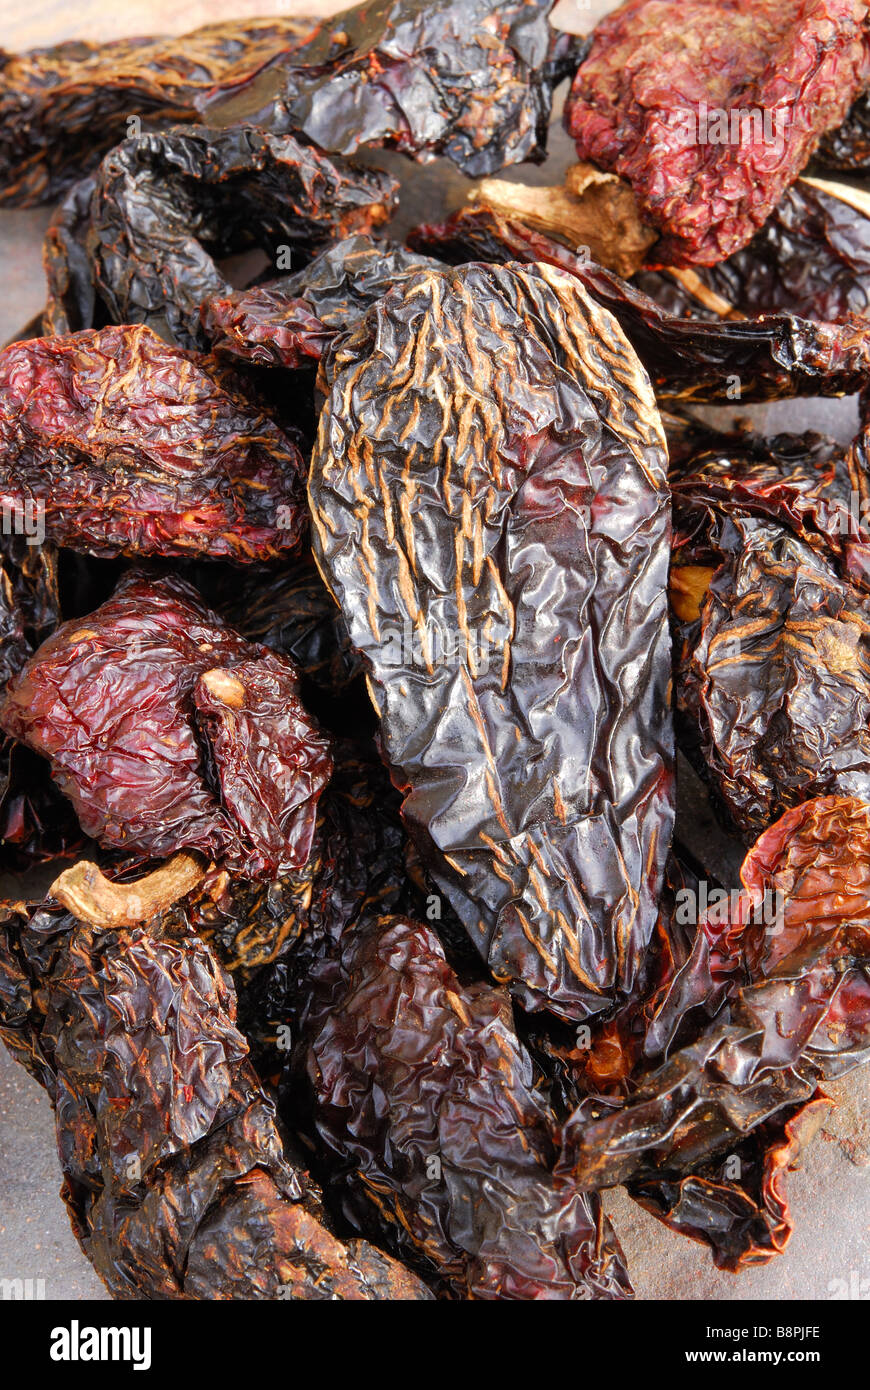 Chipotle "Moritas". Getrocknete, geräucherte Jalapeno Chilis verwendet, um einen rauchigen Hitze, mexikanische und TexMex Küche hinzuzufügen. Stockfoto